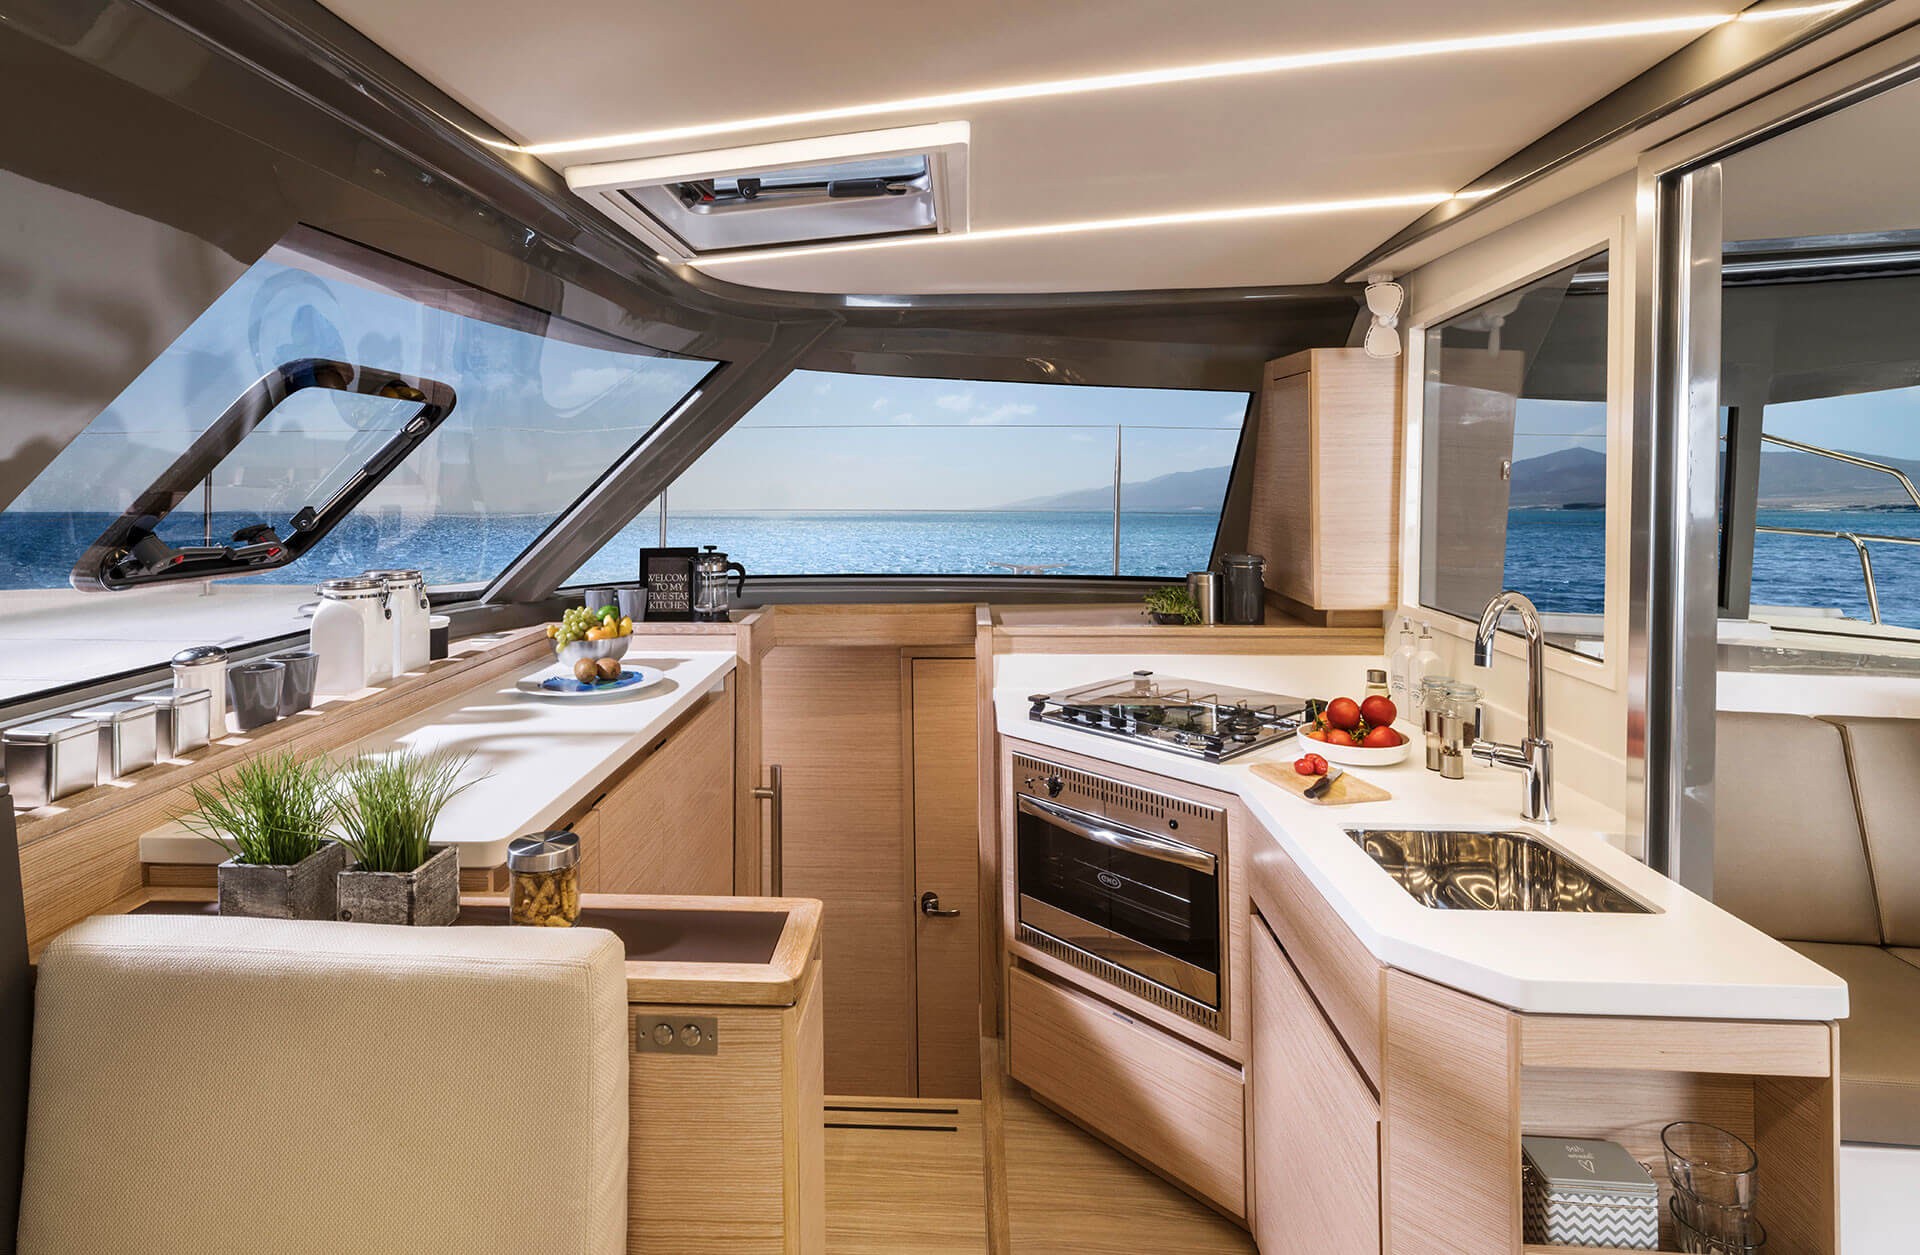 New Sail Catamaran for Sale 2023 Nautitech 40 Open Layout & Accommodations